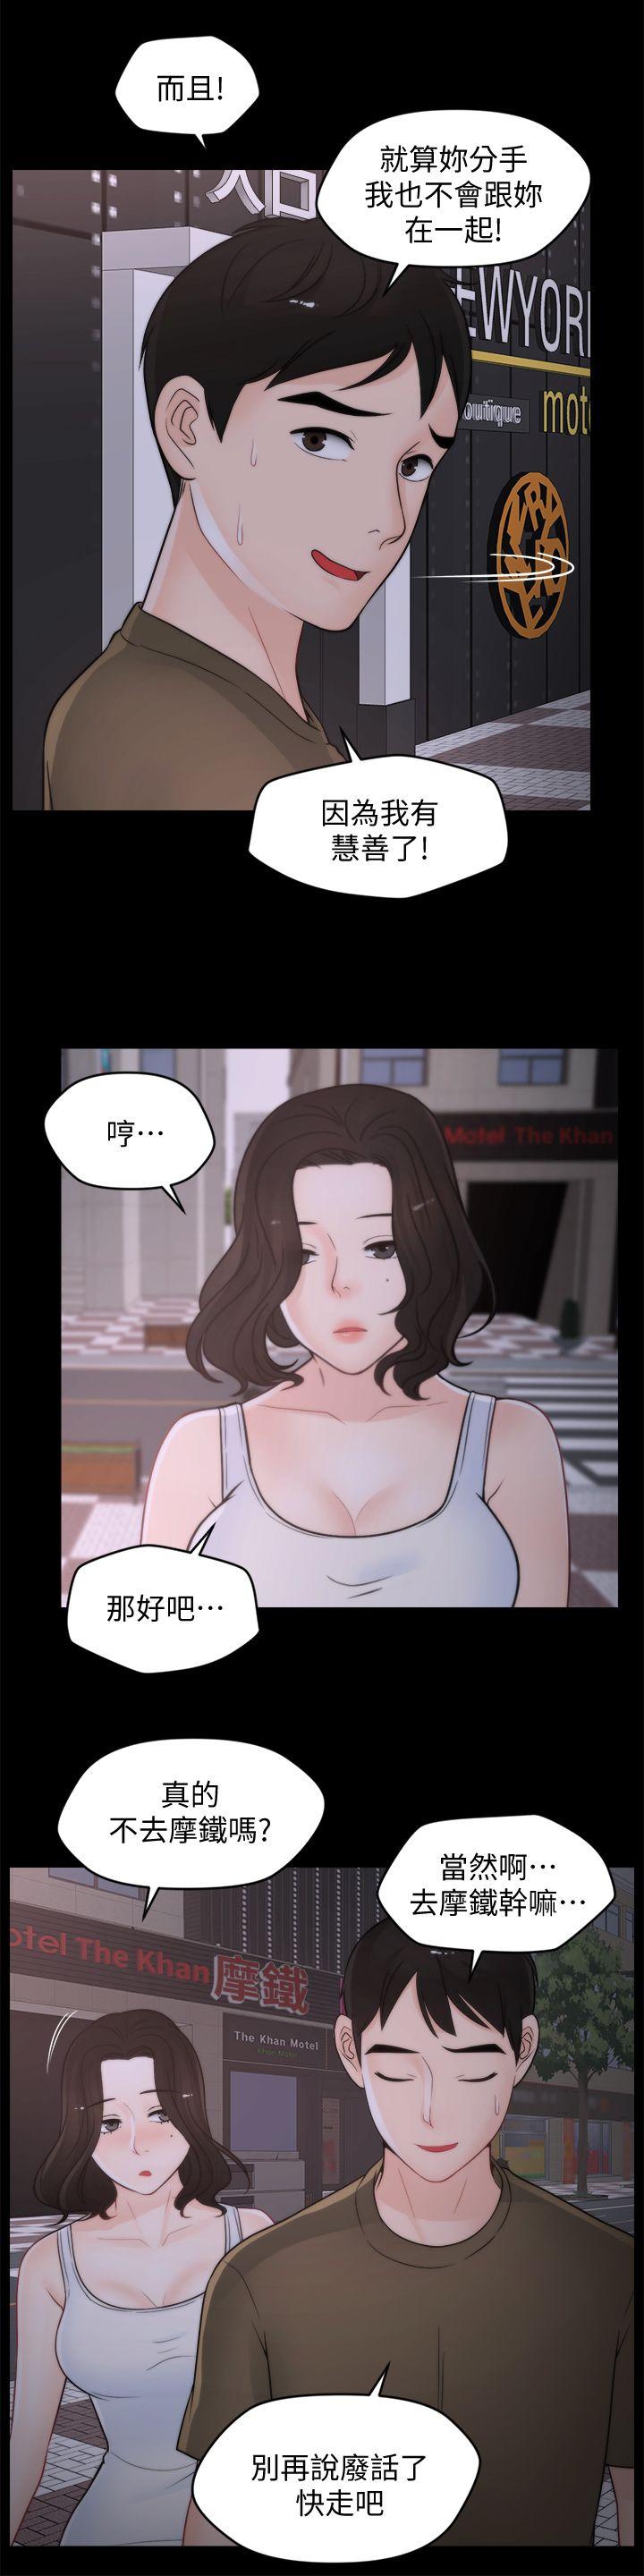 韩国污漫画 偷偷愛 第42话-第一次从后面来… 16